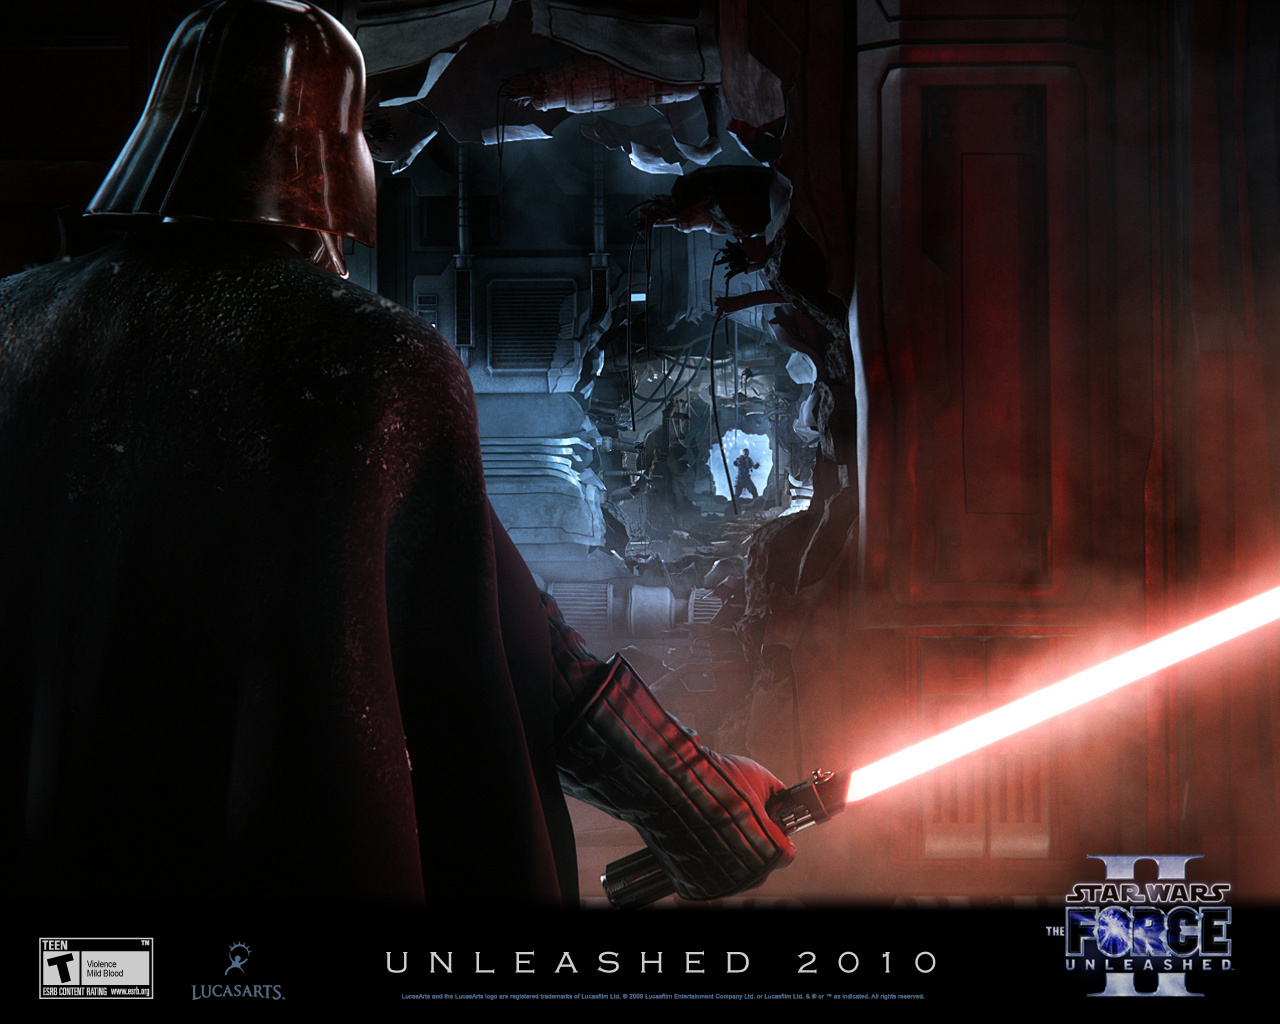 Force Unleashed 2 - Star Wars Wallpaper (17136944) - Fanpop